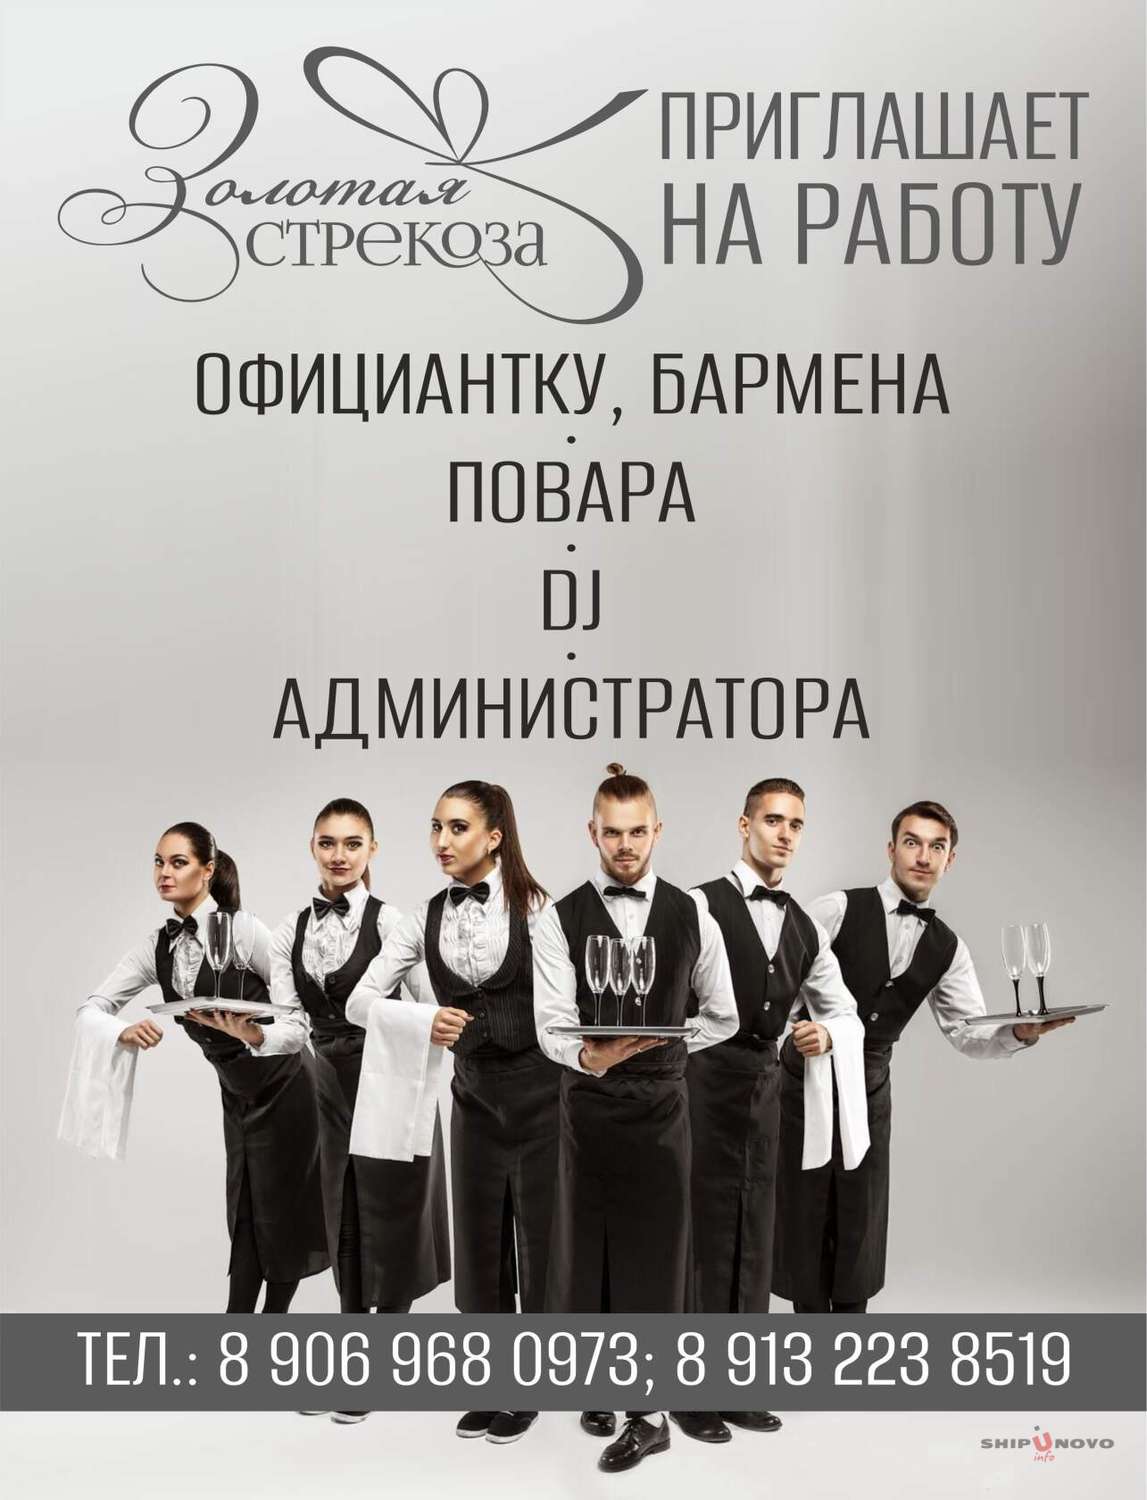 Кафе "Золотая стрекоза", с. Шипуново, приглашает на работу